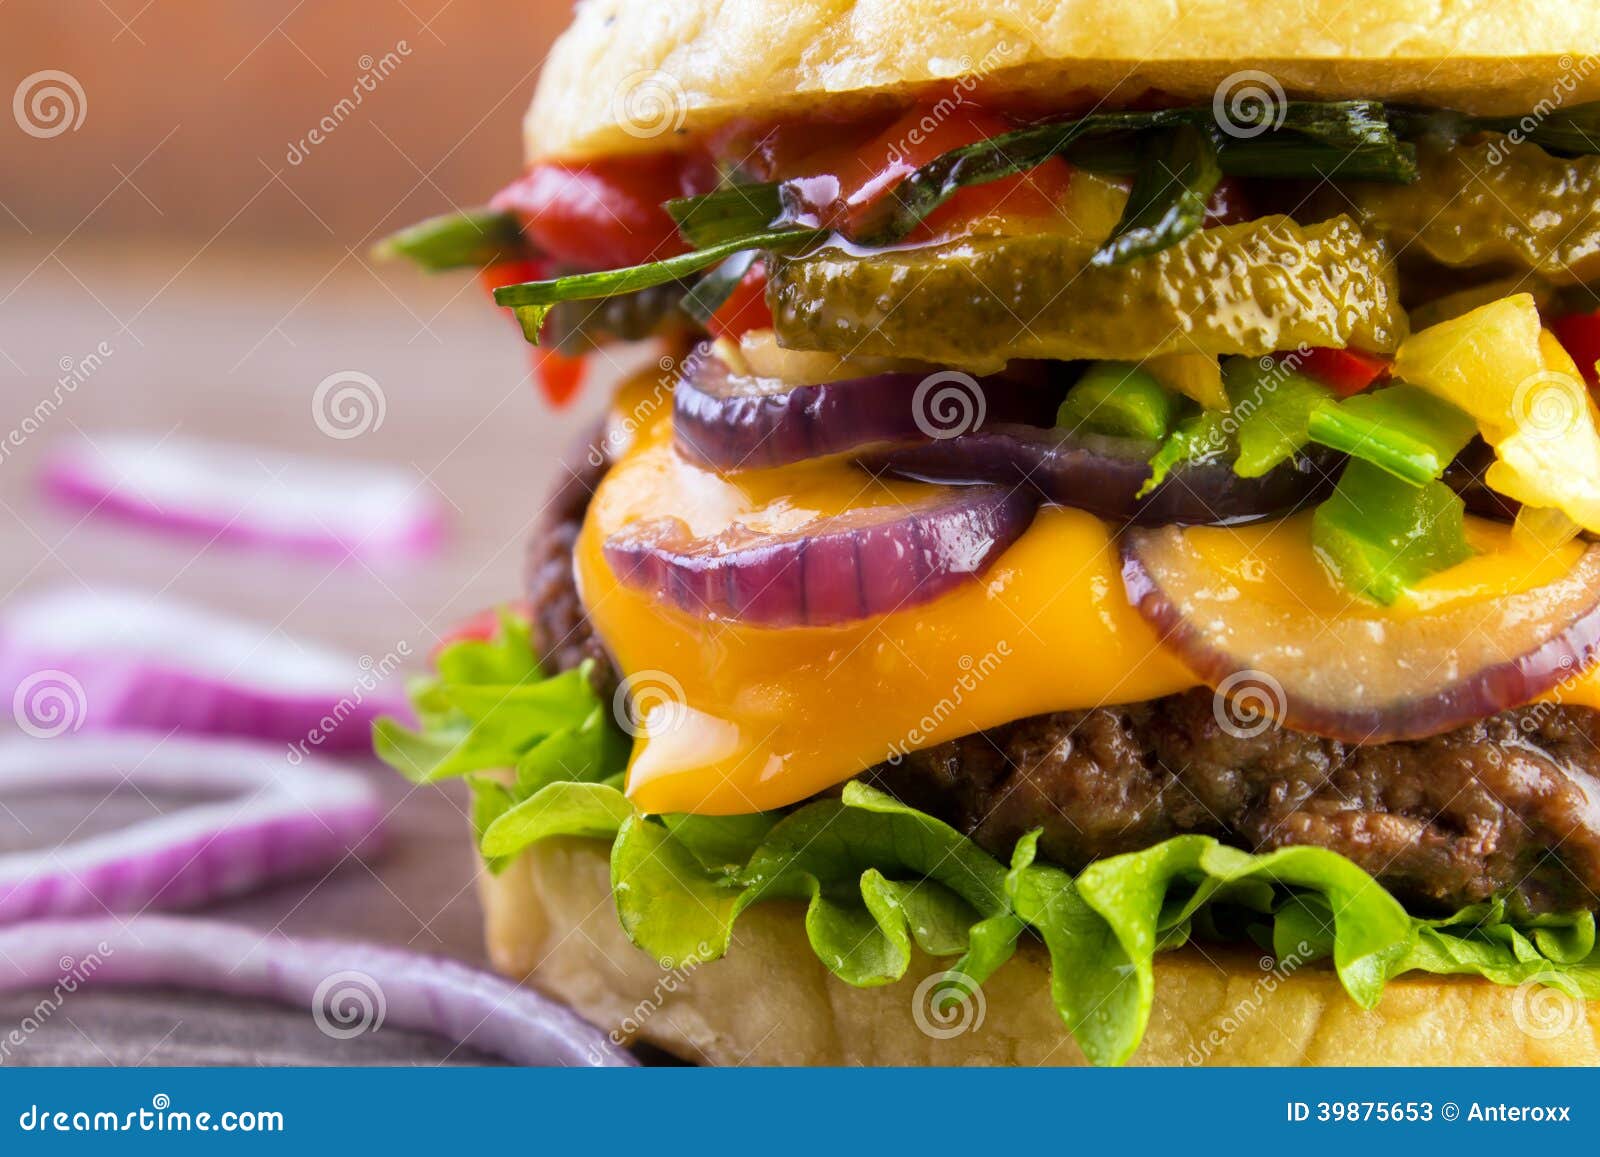 gourmet burger closeup